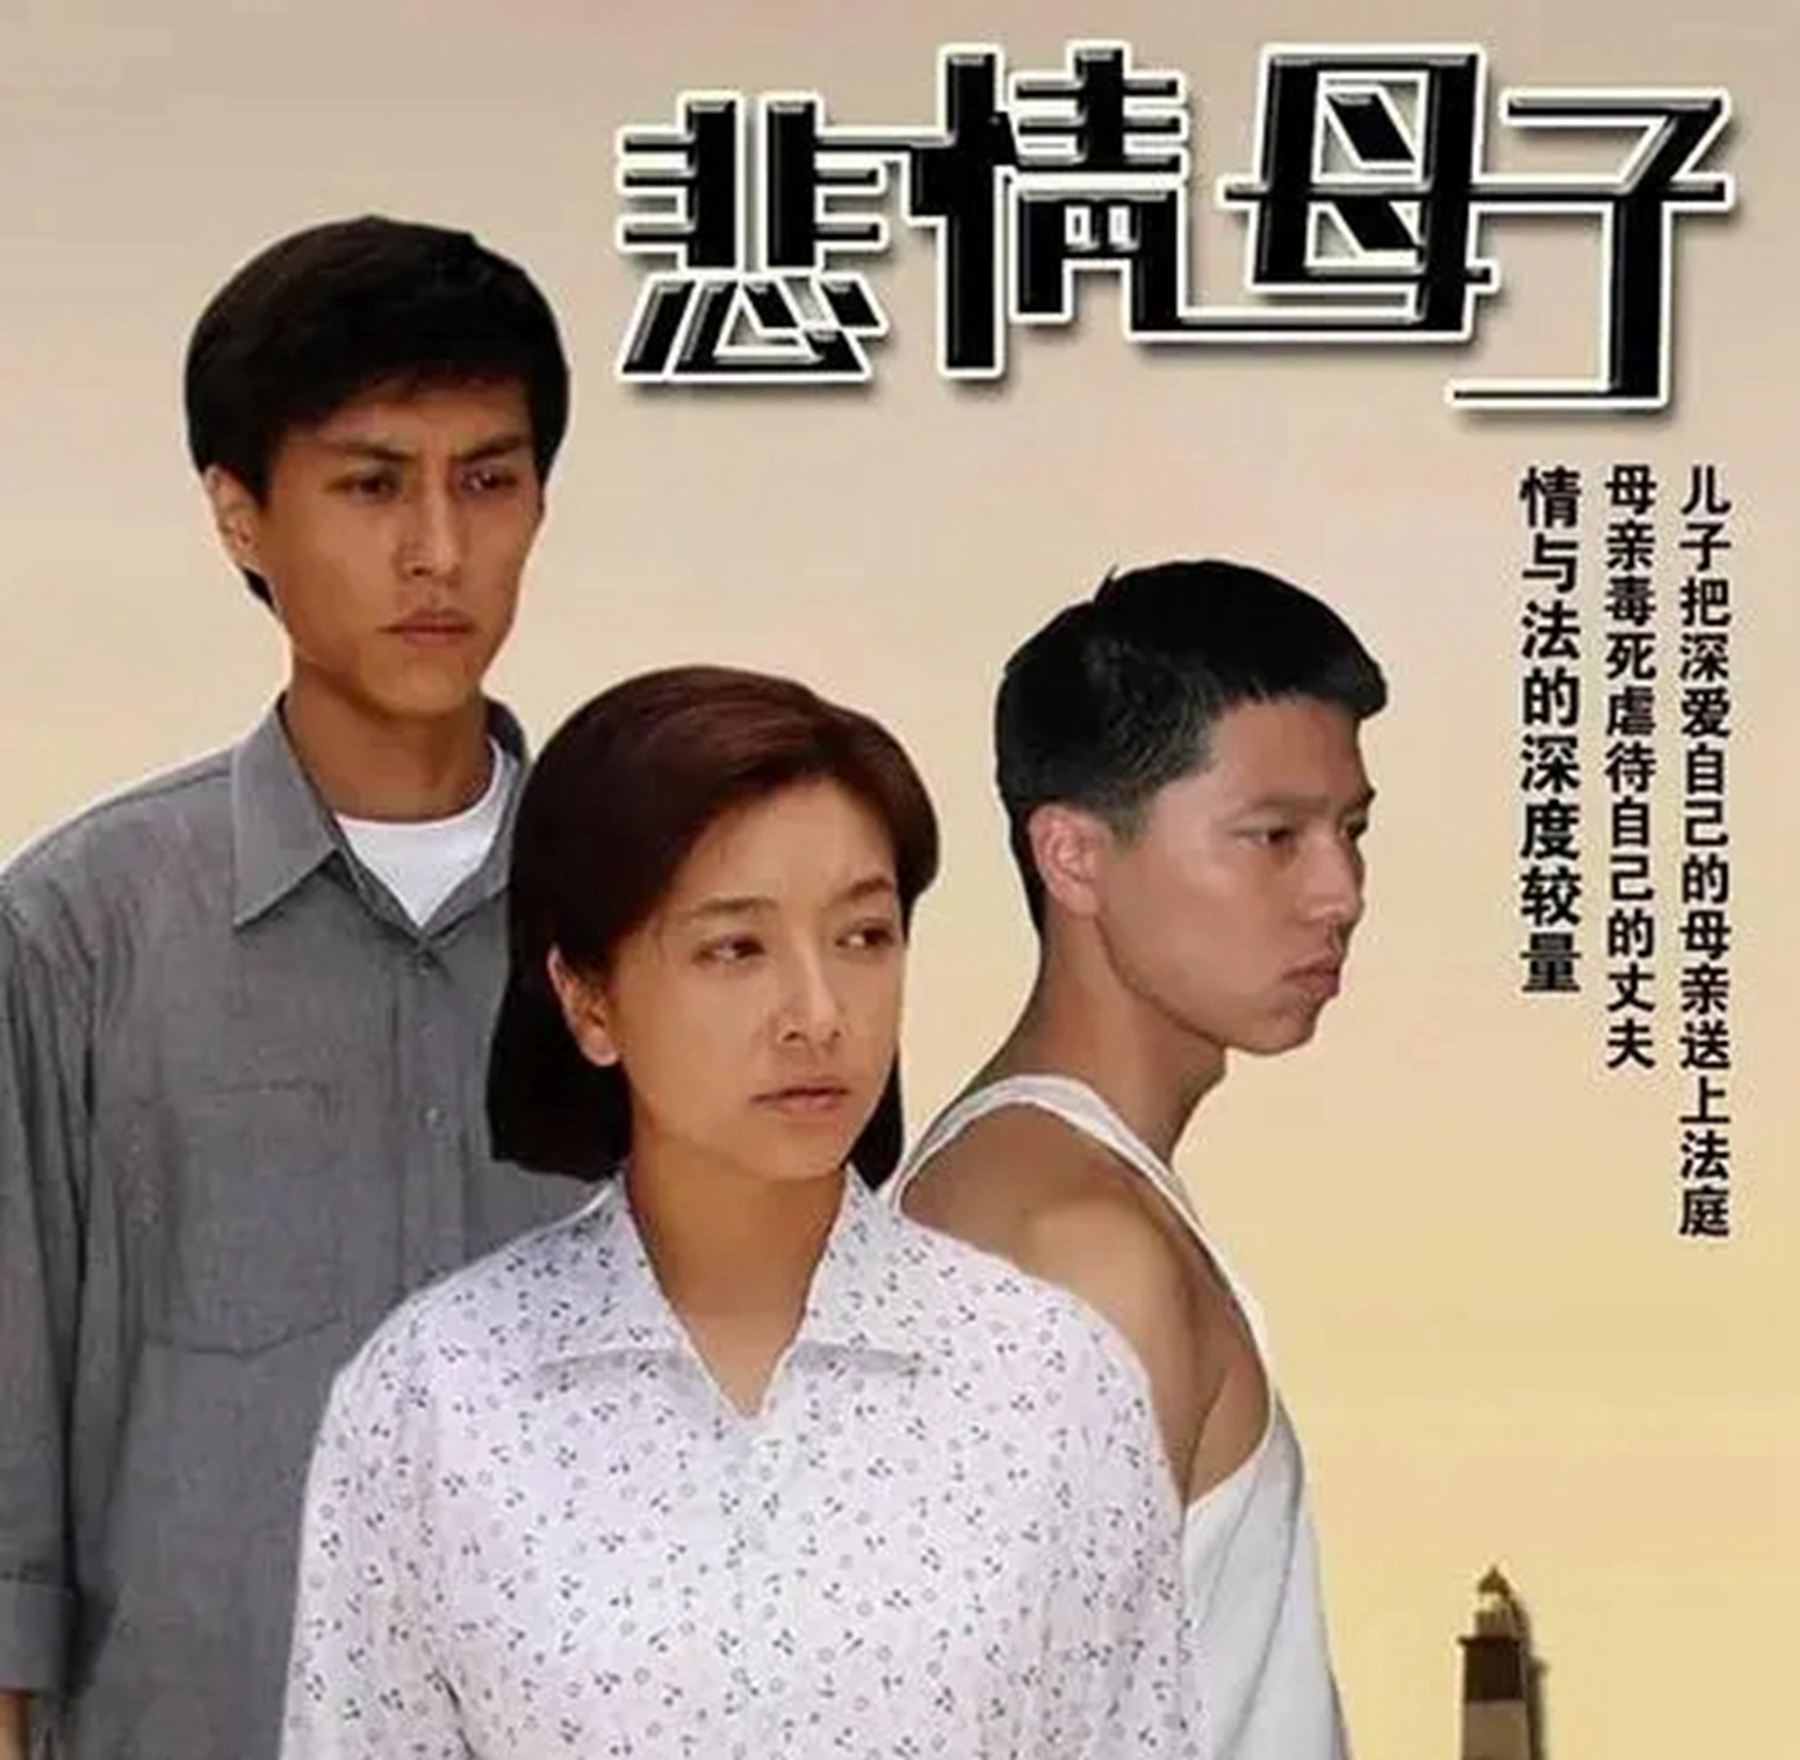 2006年,靳东与大他9岁的江珊在电视剧《悲情母子》中相遇,俩人饰演一